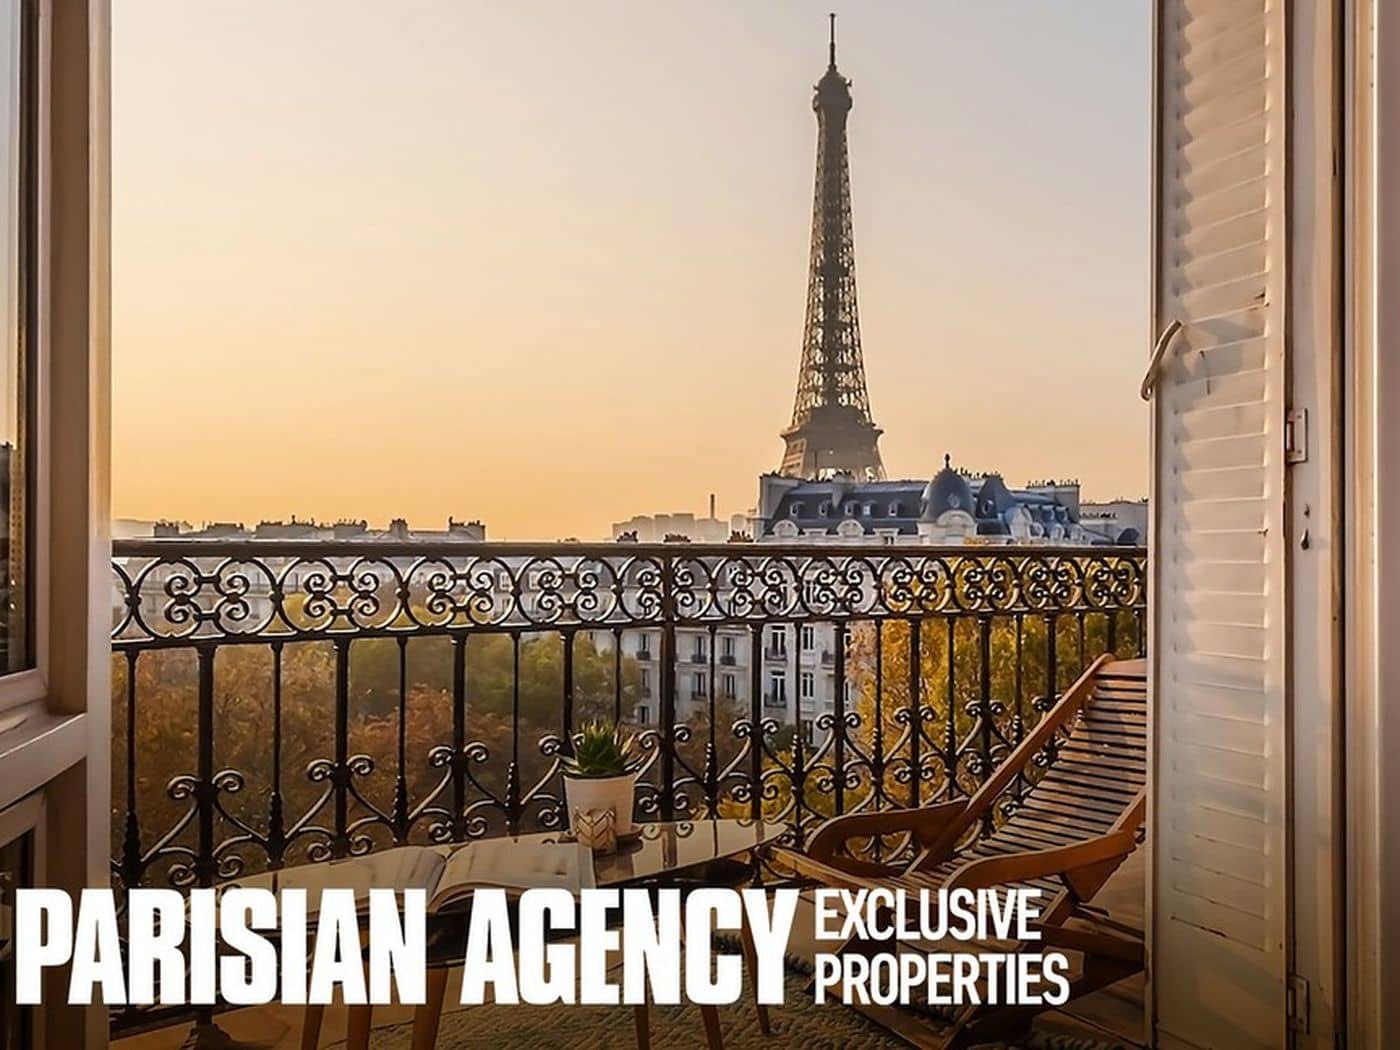 The Parisian Agency